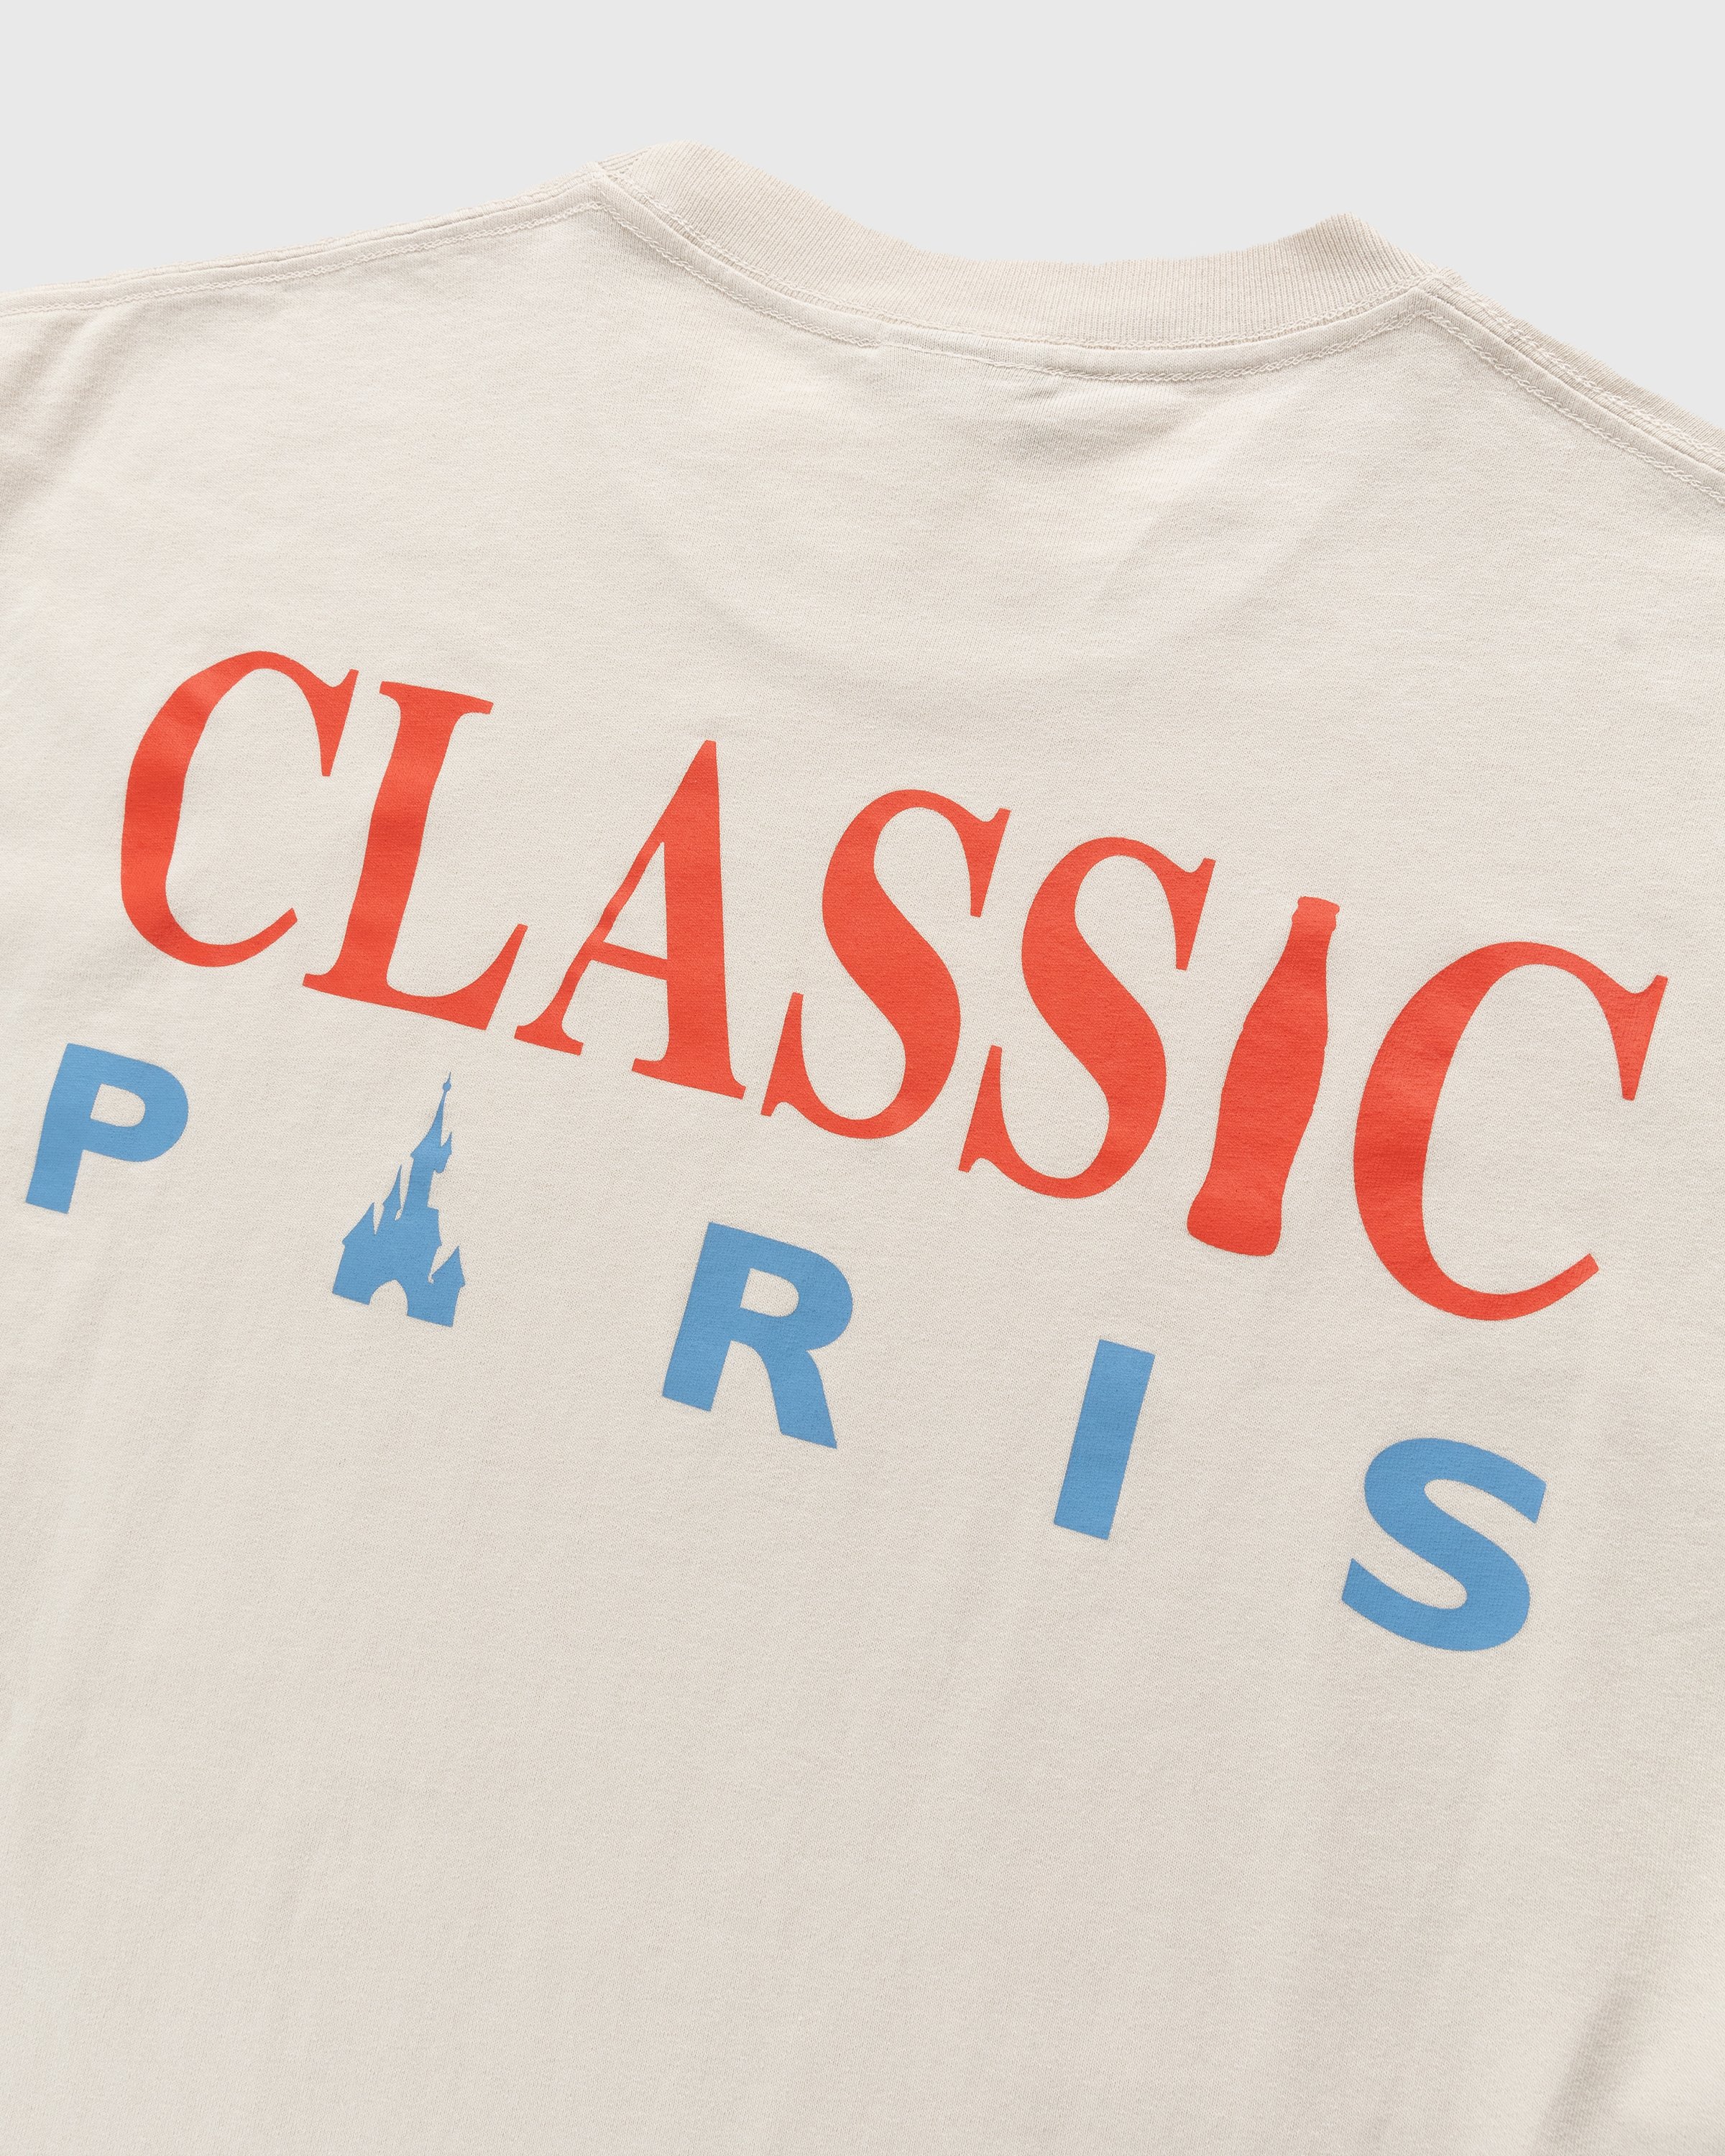 Coca-Cola x Disneyland Paris - Not In Paris 4 Classic Paris T-Shirt Natural - Clothing - Beige - Image 3